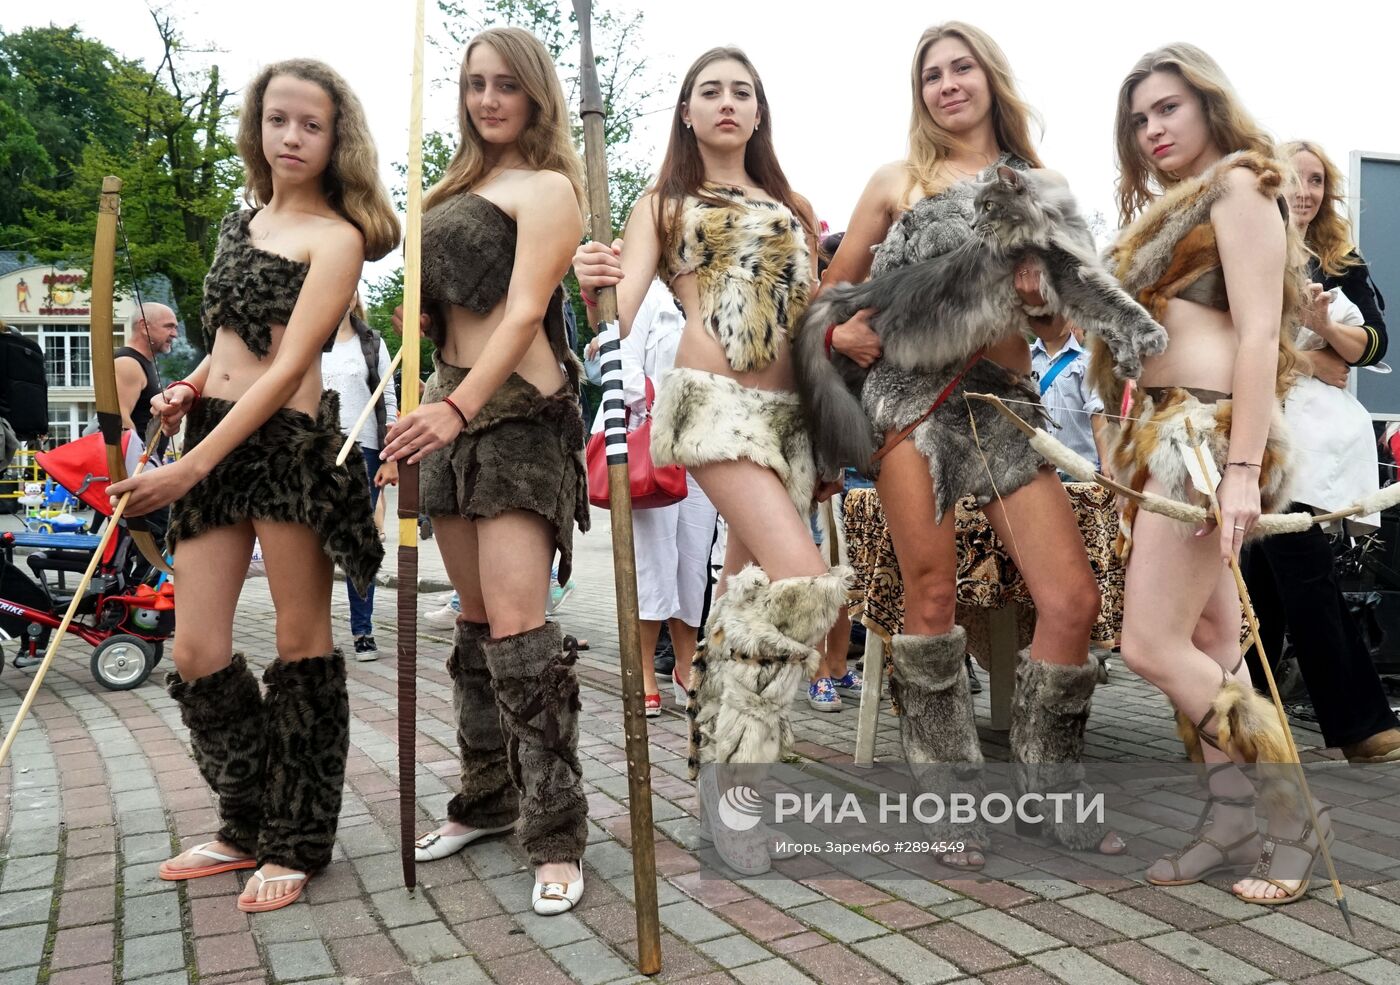 Фестиваль "Янтарный горн" в Калининградской области